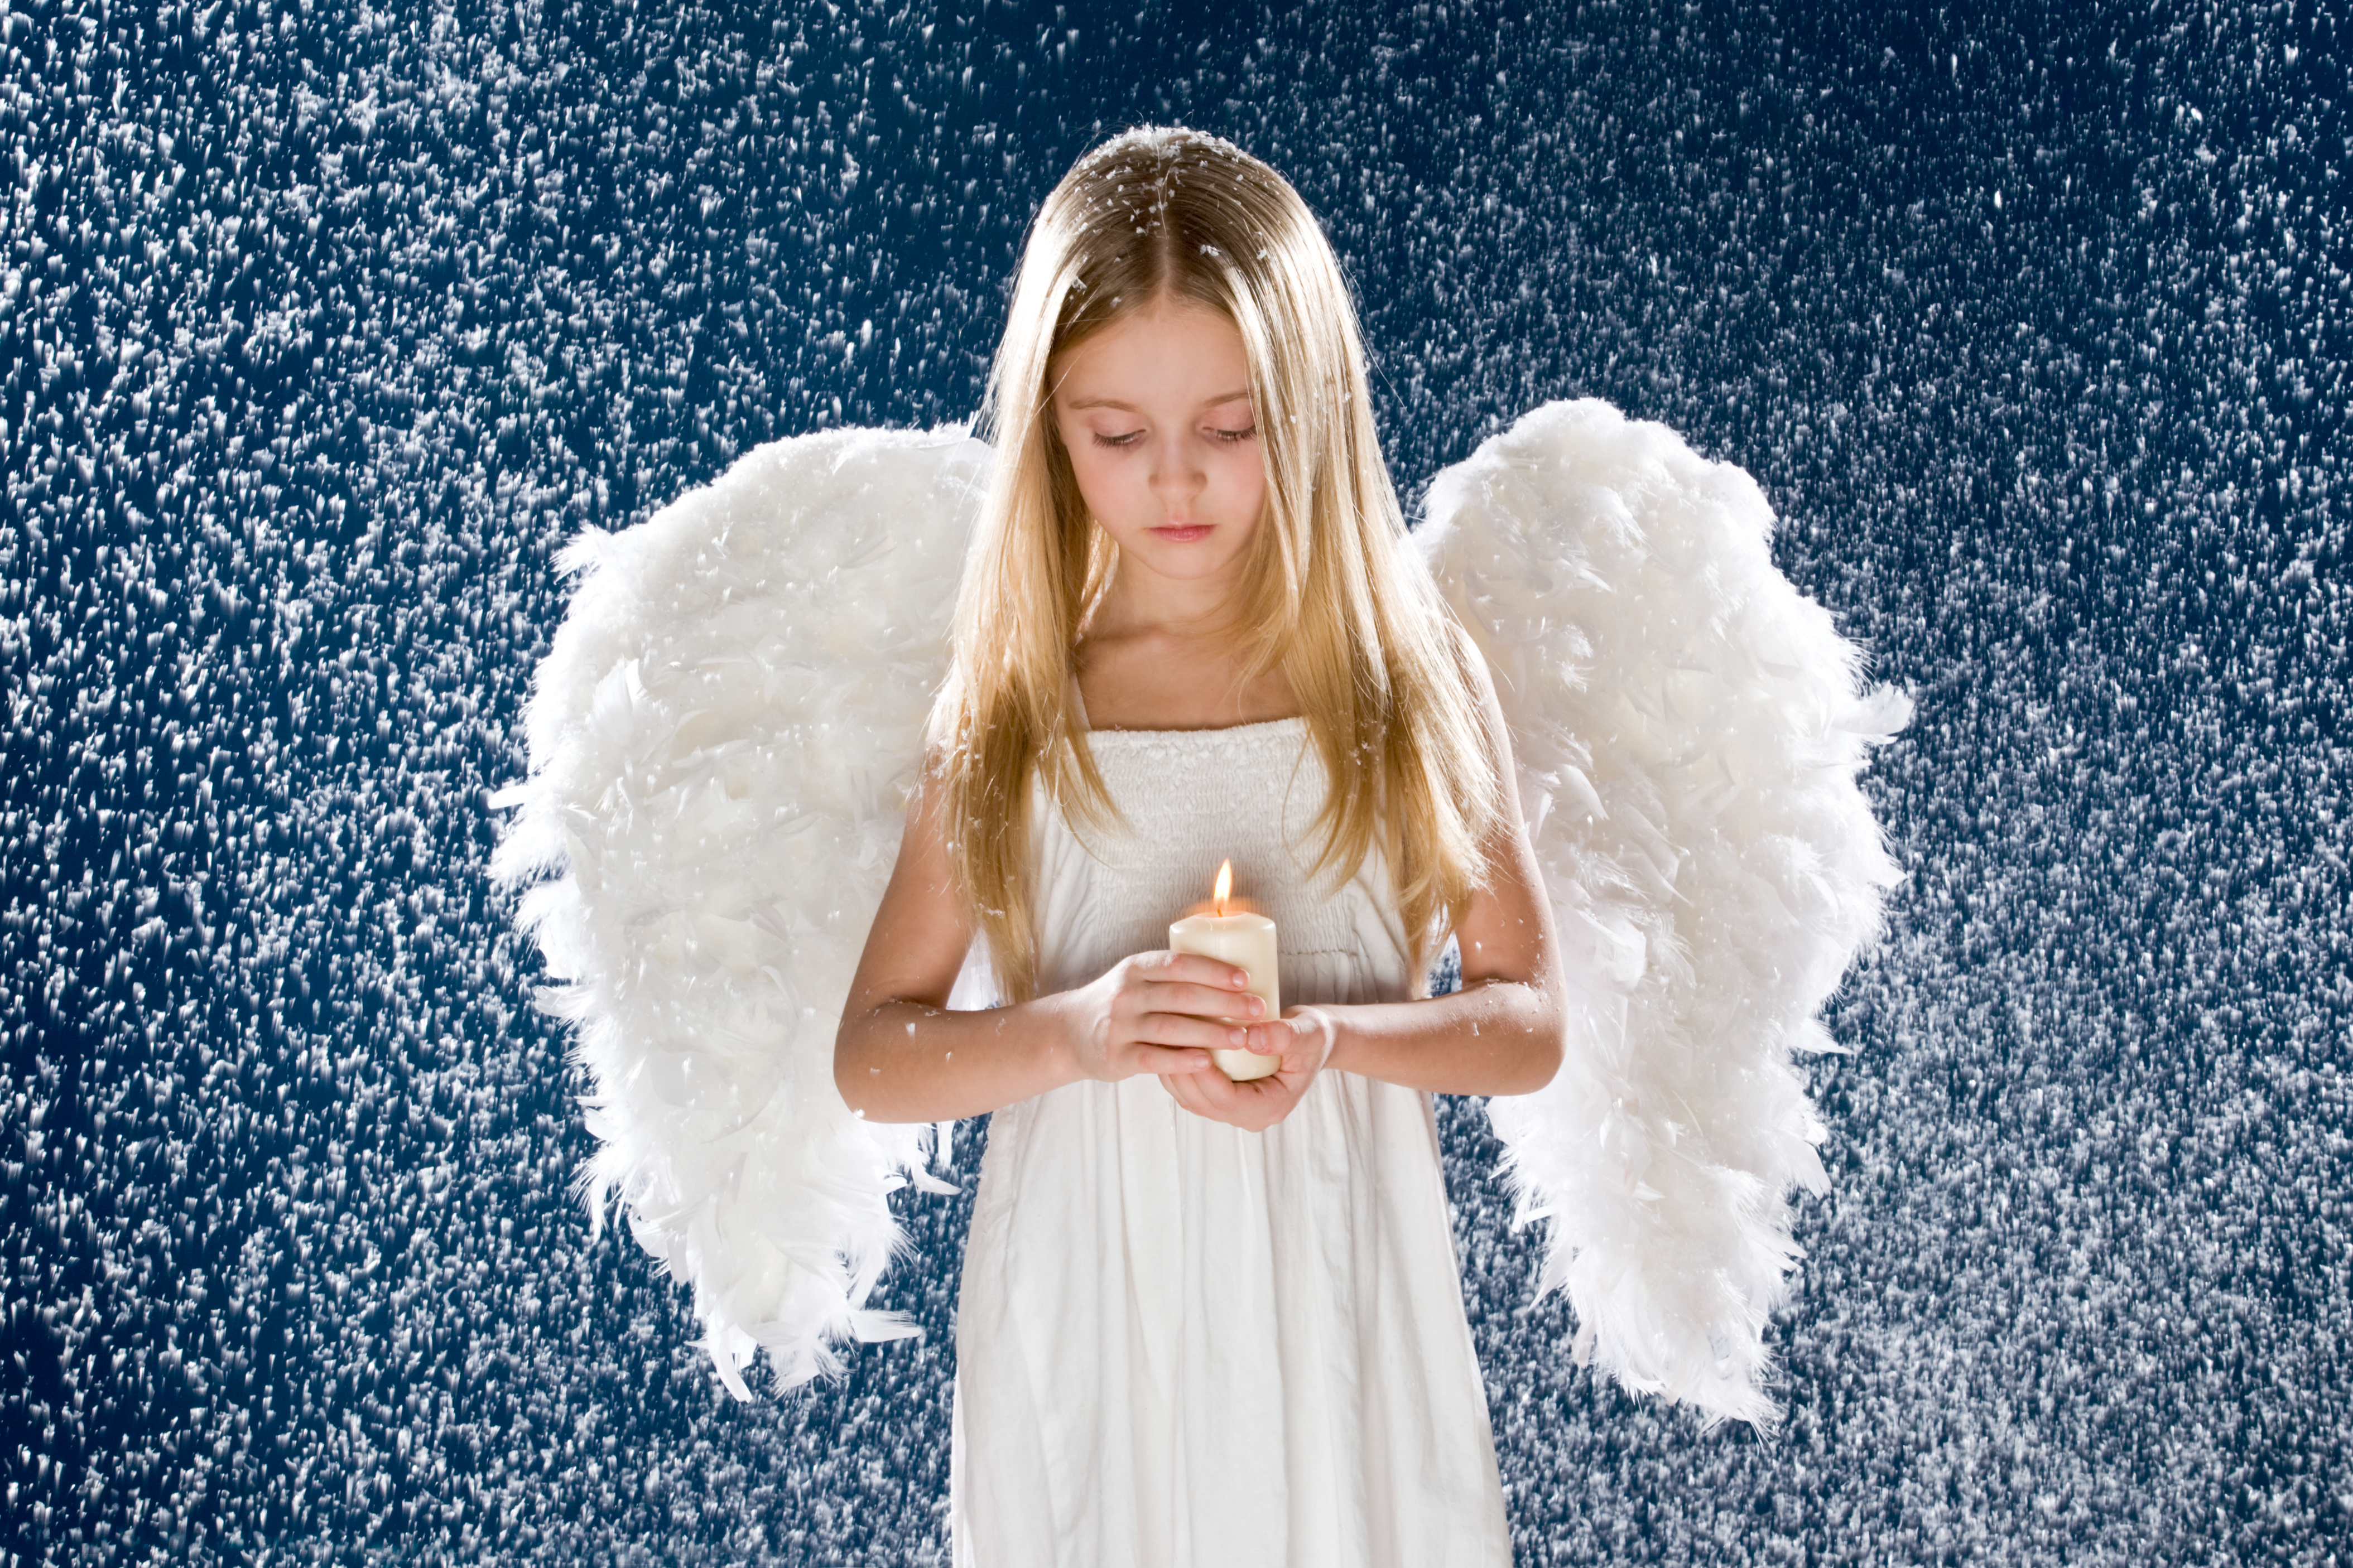 Ангель. Ангел. Красивый ангел. Девушка - ангел. Девушка с крыльями ангела.